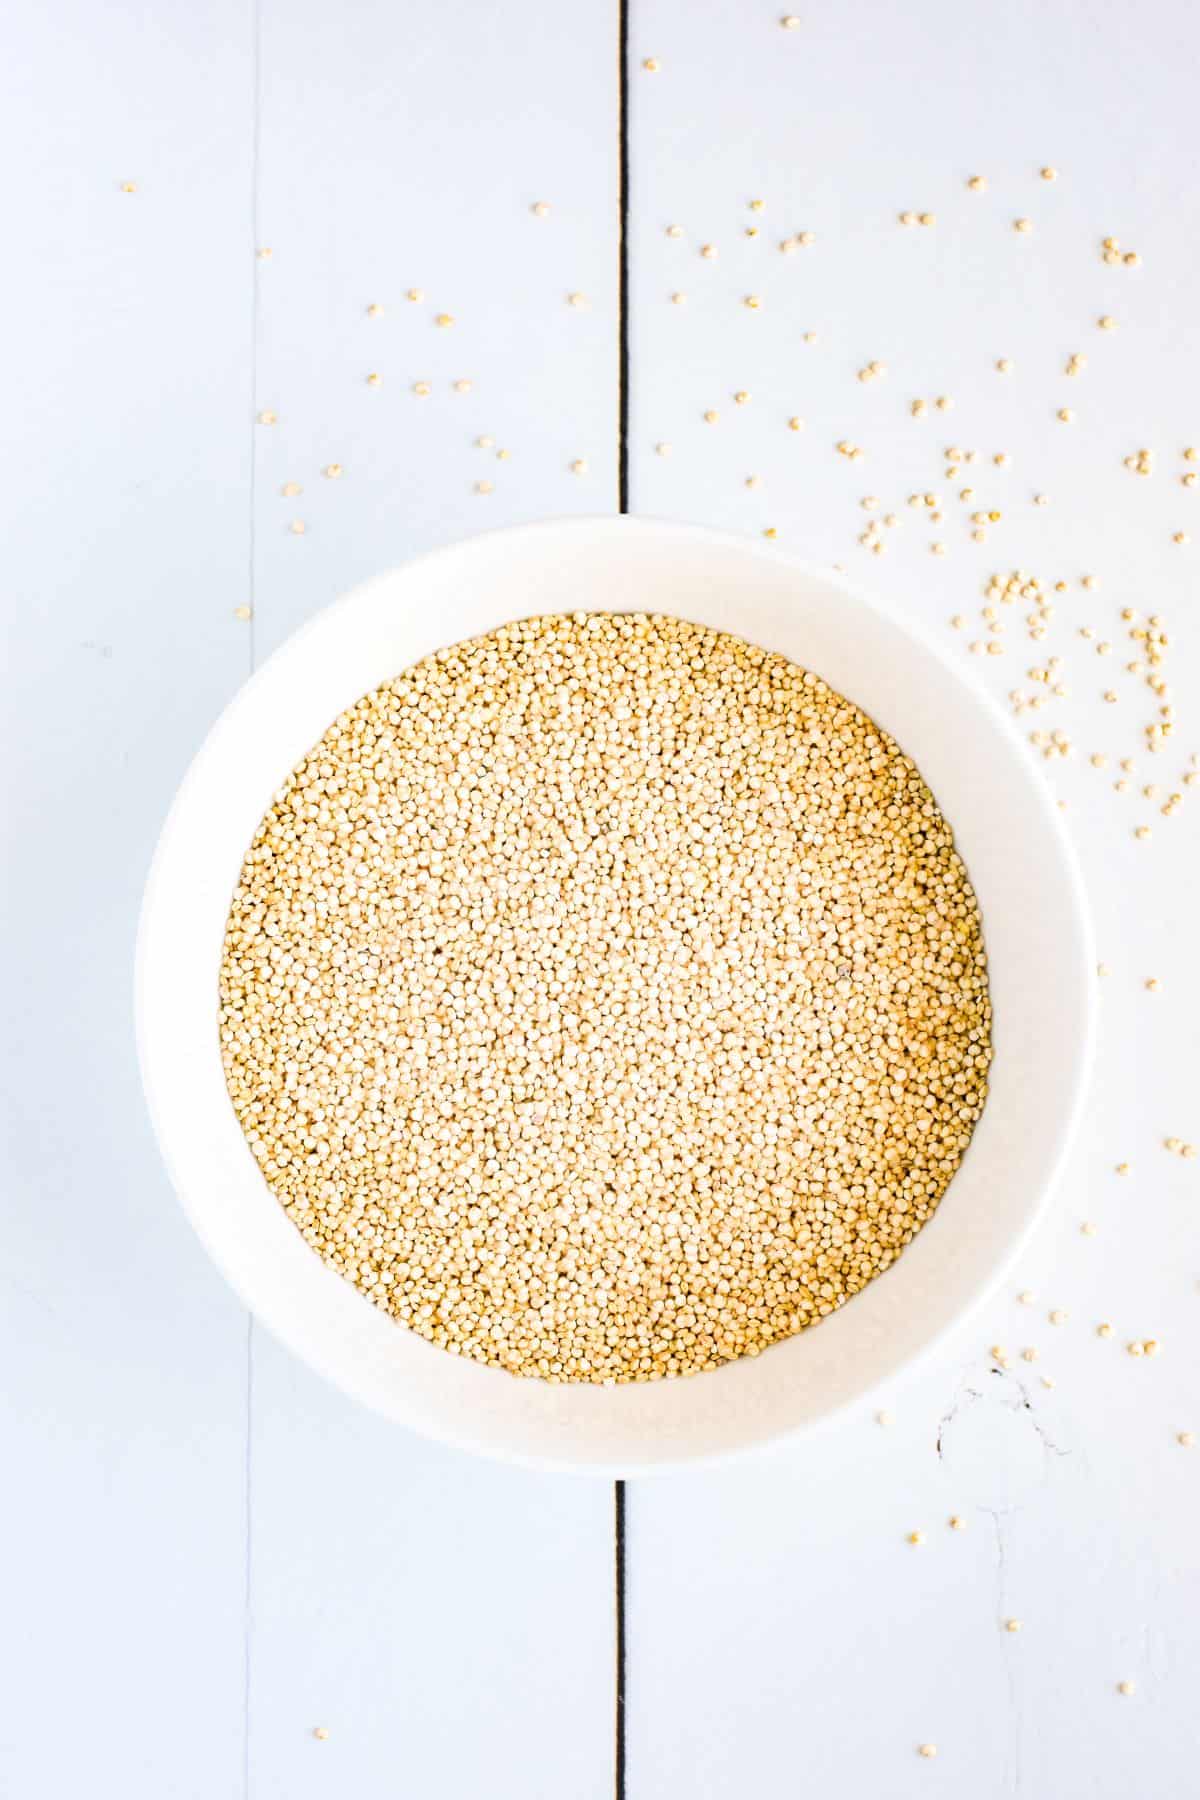 Bowl of uncooked quinoa.